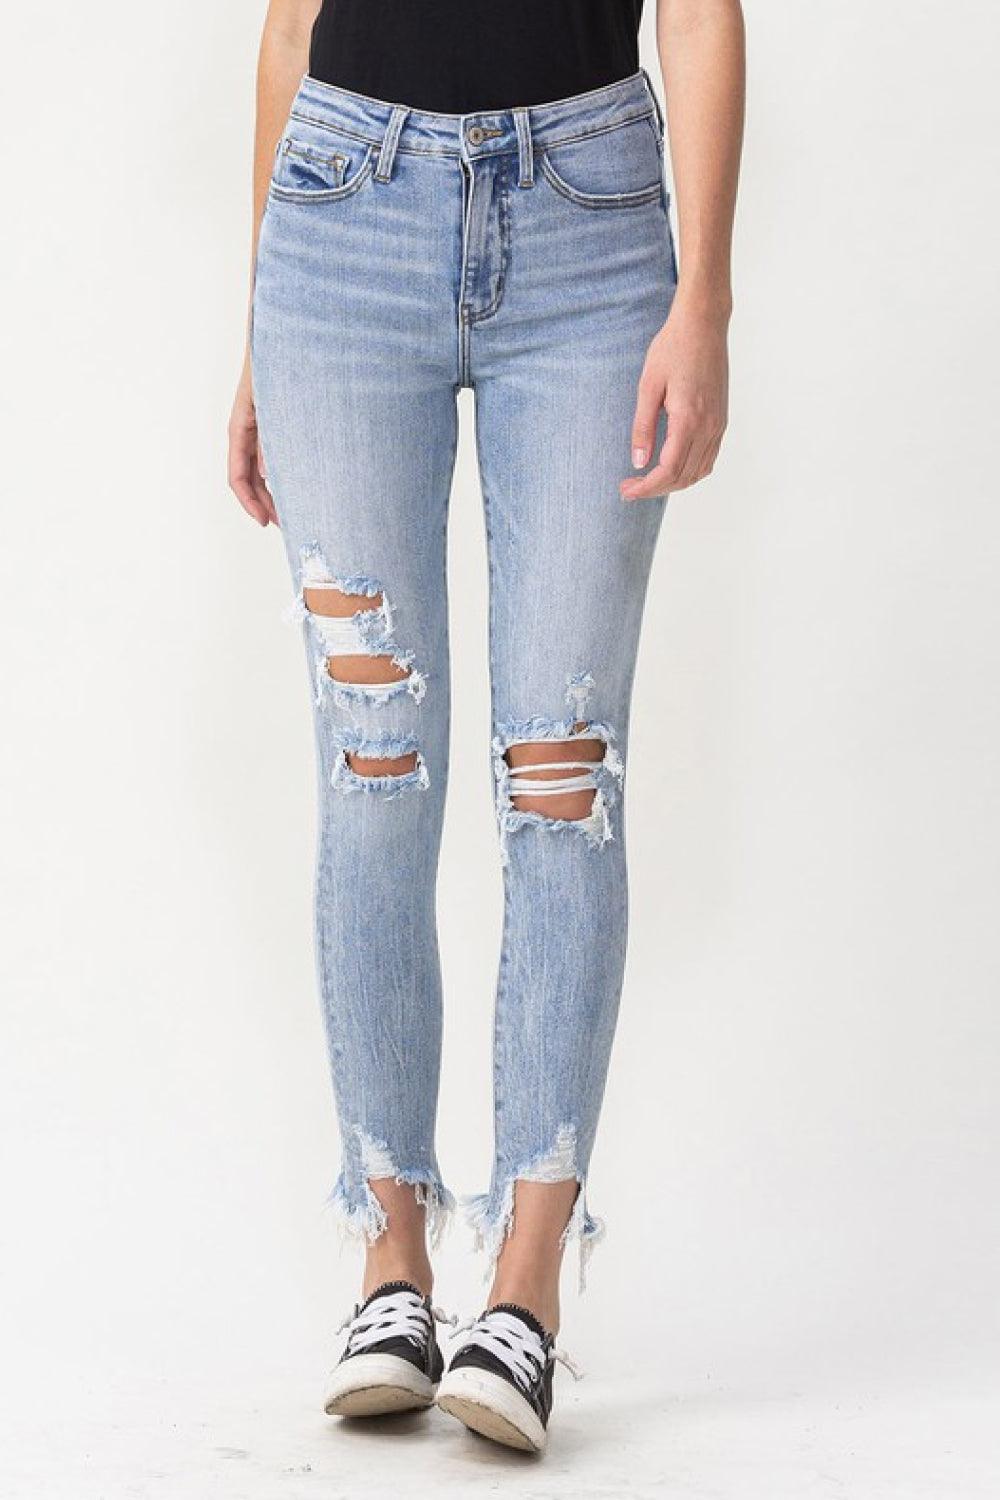 Lovervet Full Size Lauren Distressed High Rise Skinny Jeans - BELLATRENDZ